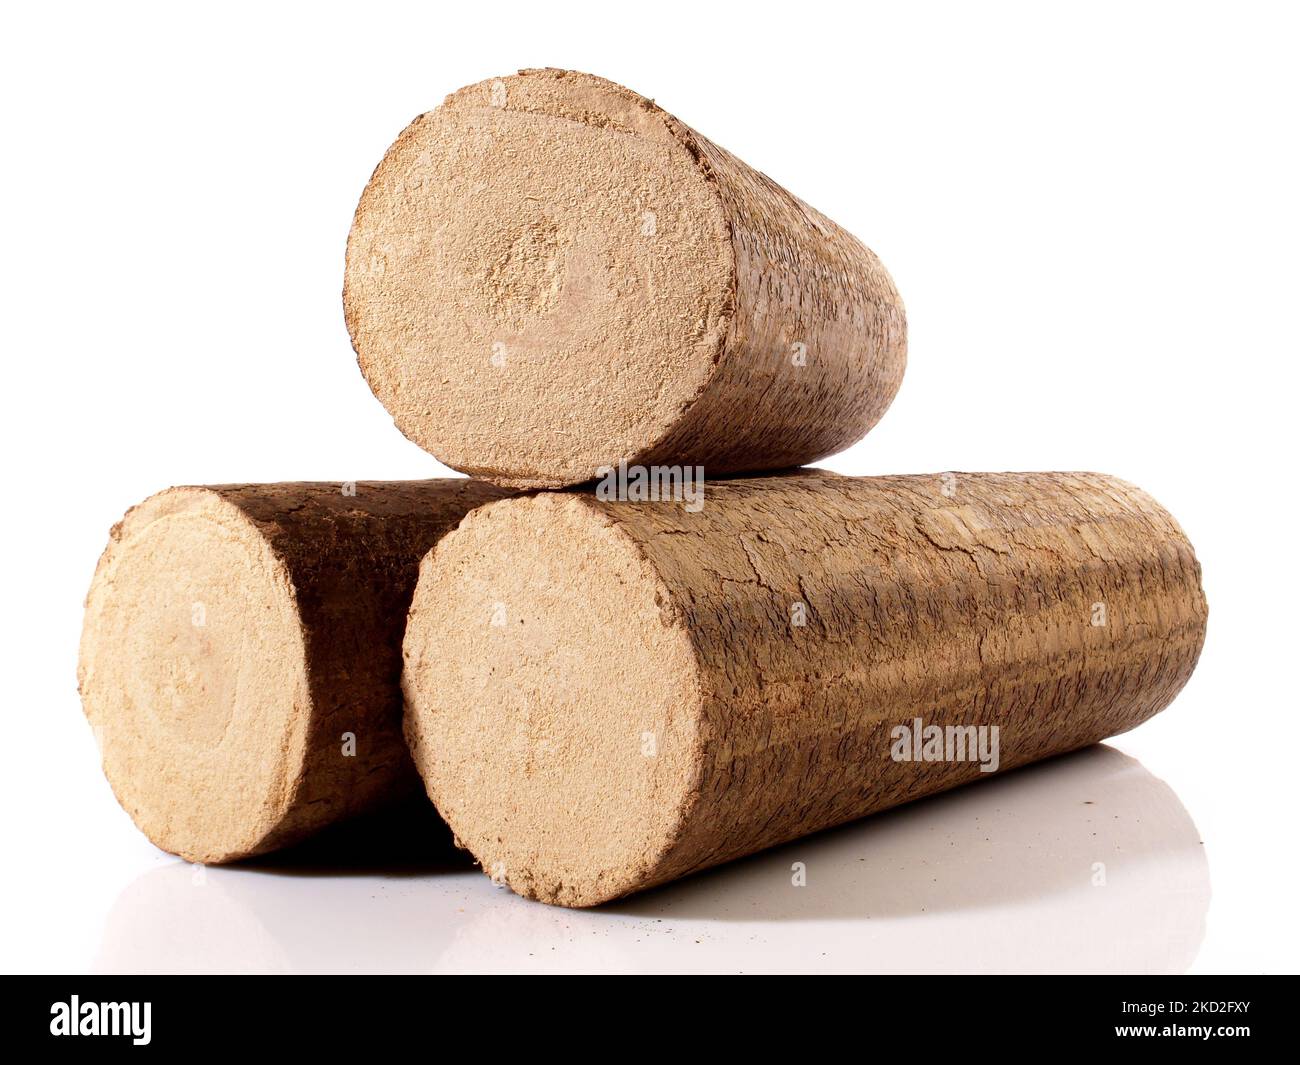 Briquettes rondes en bois dur Sawdust - billes de feu de bois à biomasse comprimée isolées sur fond blanc Banque D'Images